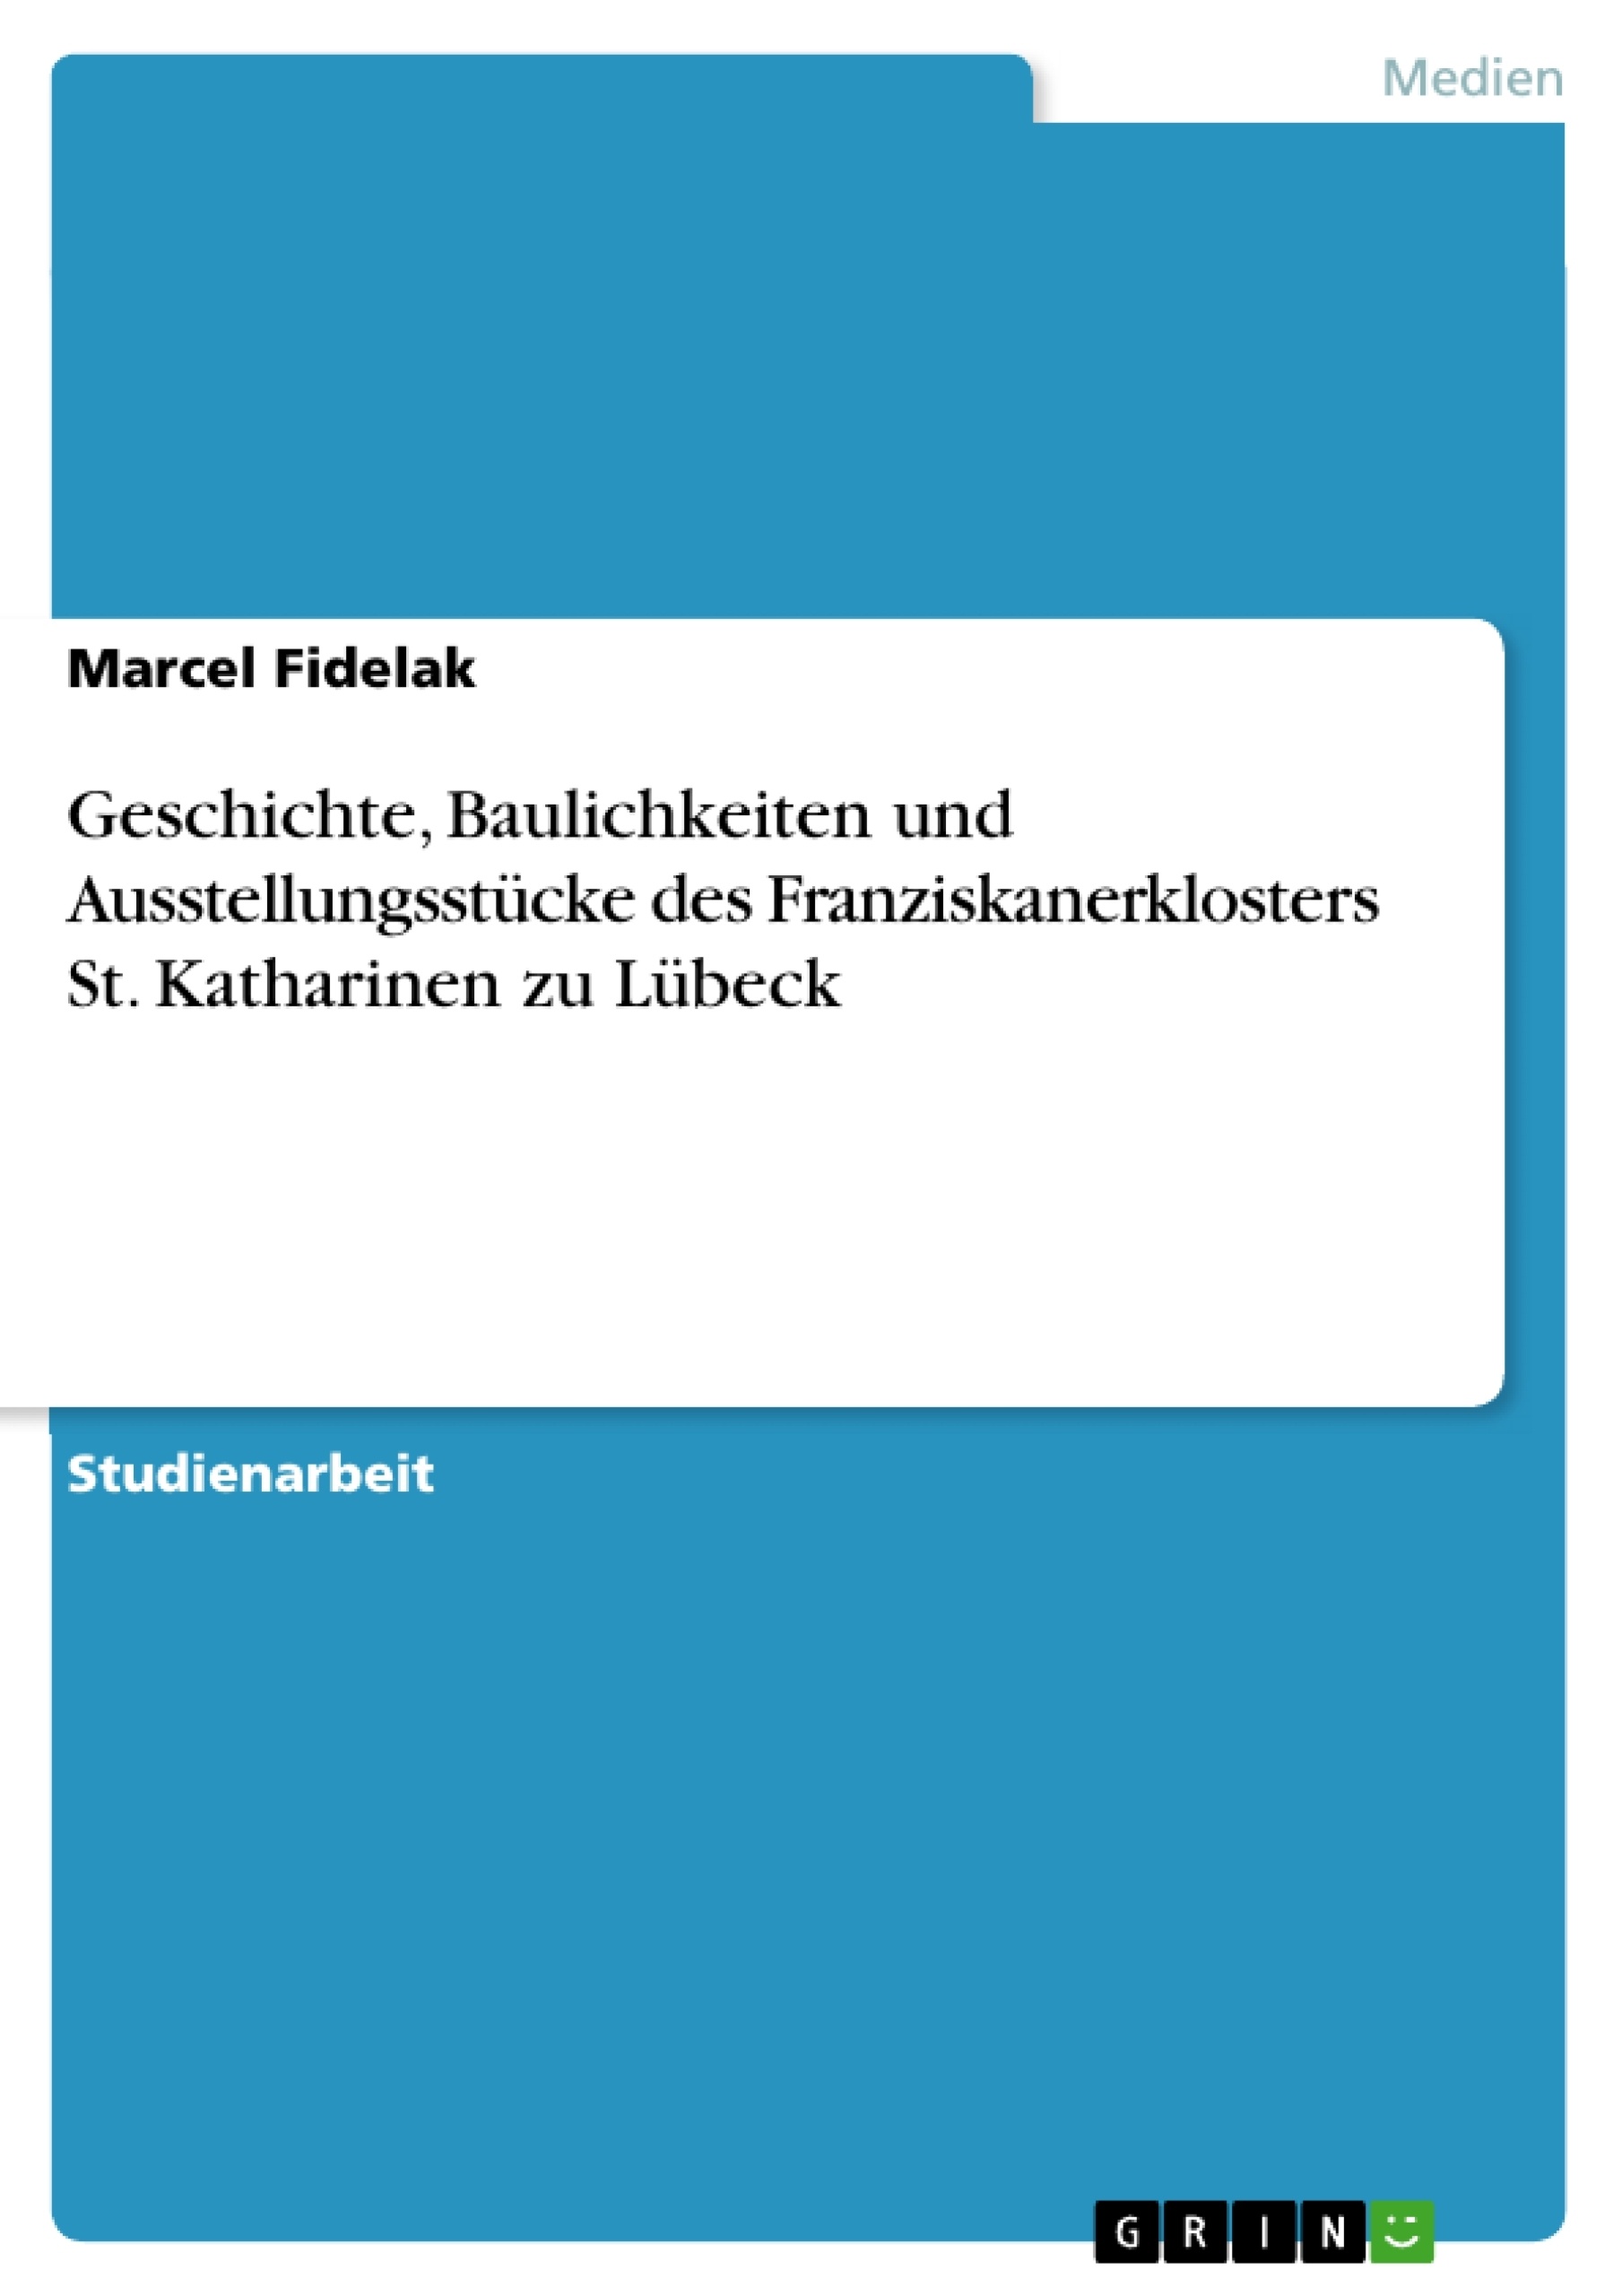 Title: Geschichte, Baulichkeiten und Ausstellungsstücke des Franziskanerklosters St. Katharinen zu Lübeck